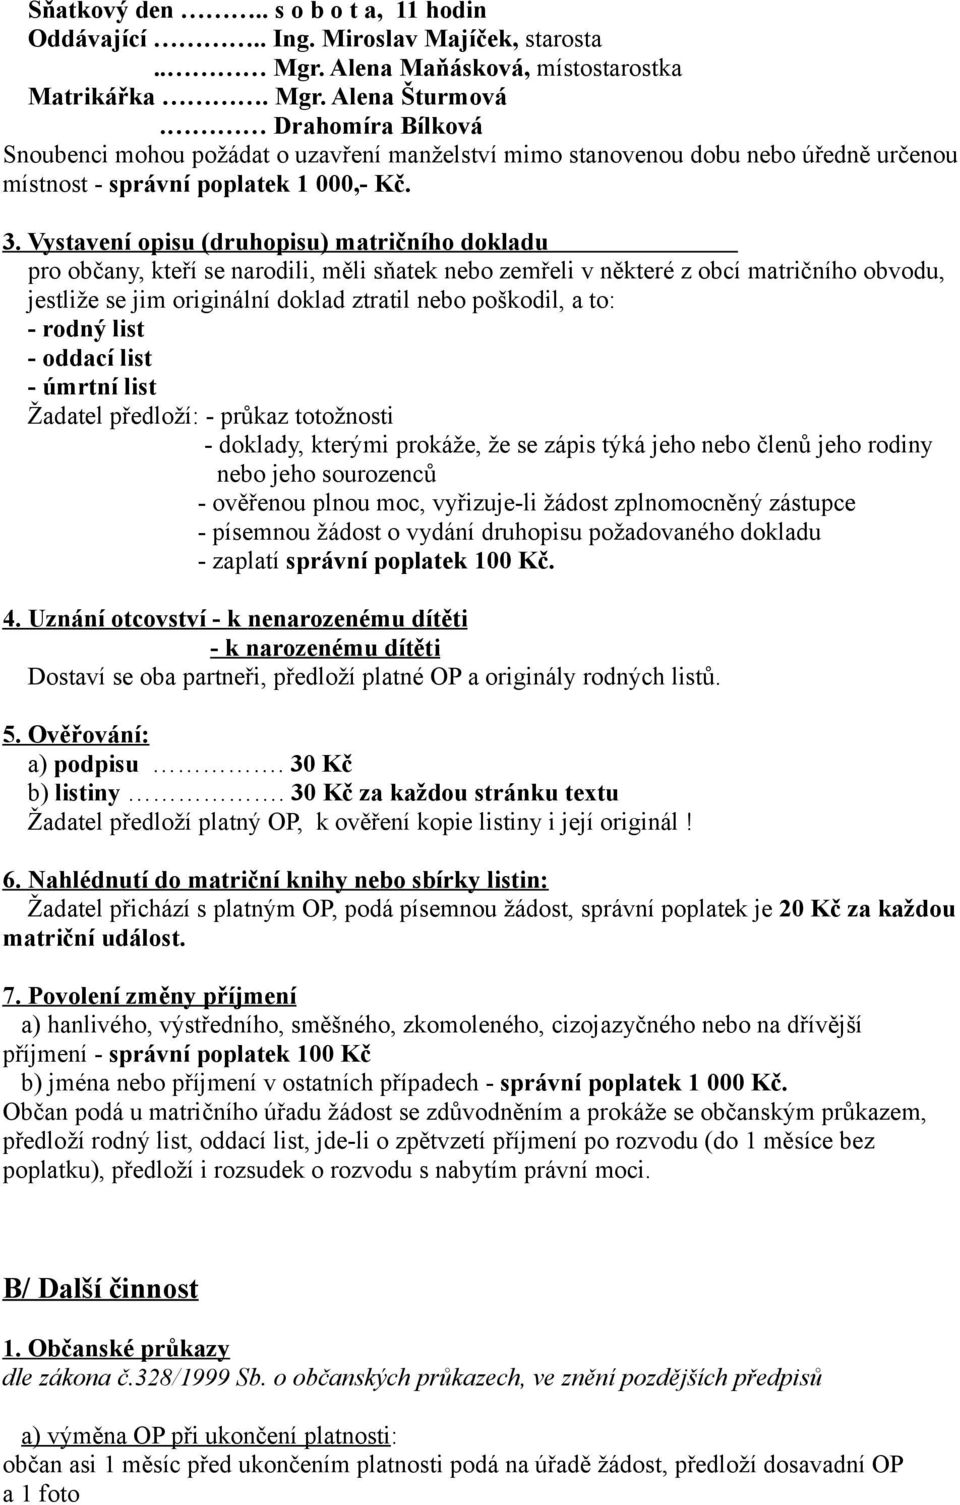 MATRIKA VELKÝ OŘECHOV - PDF Stažení zdarma